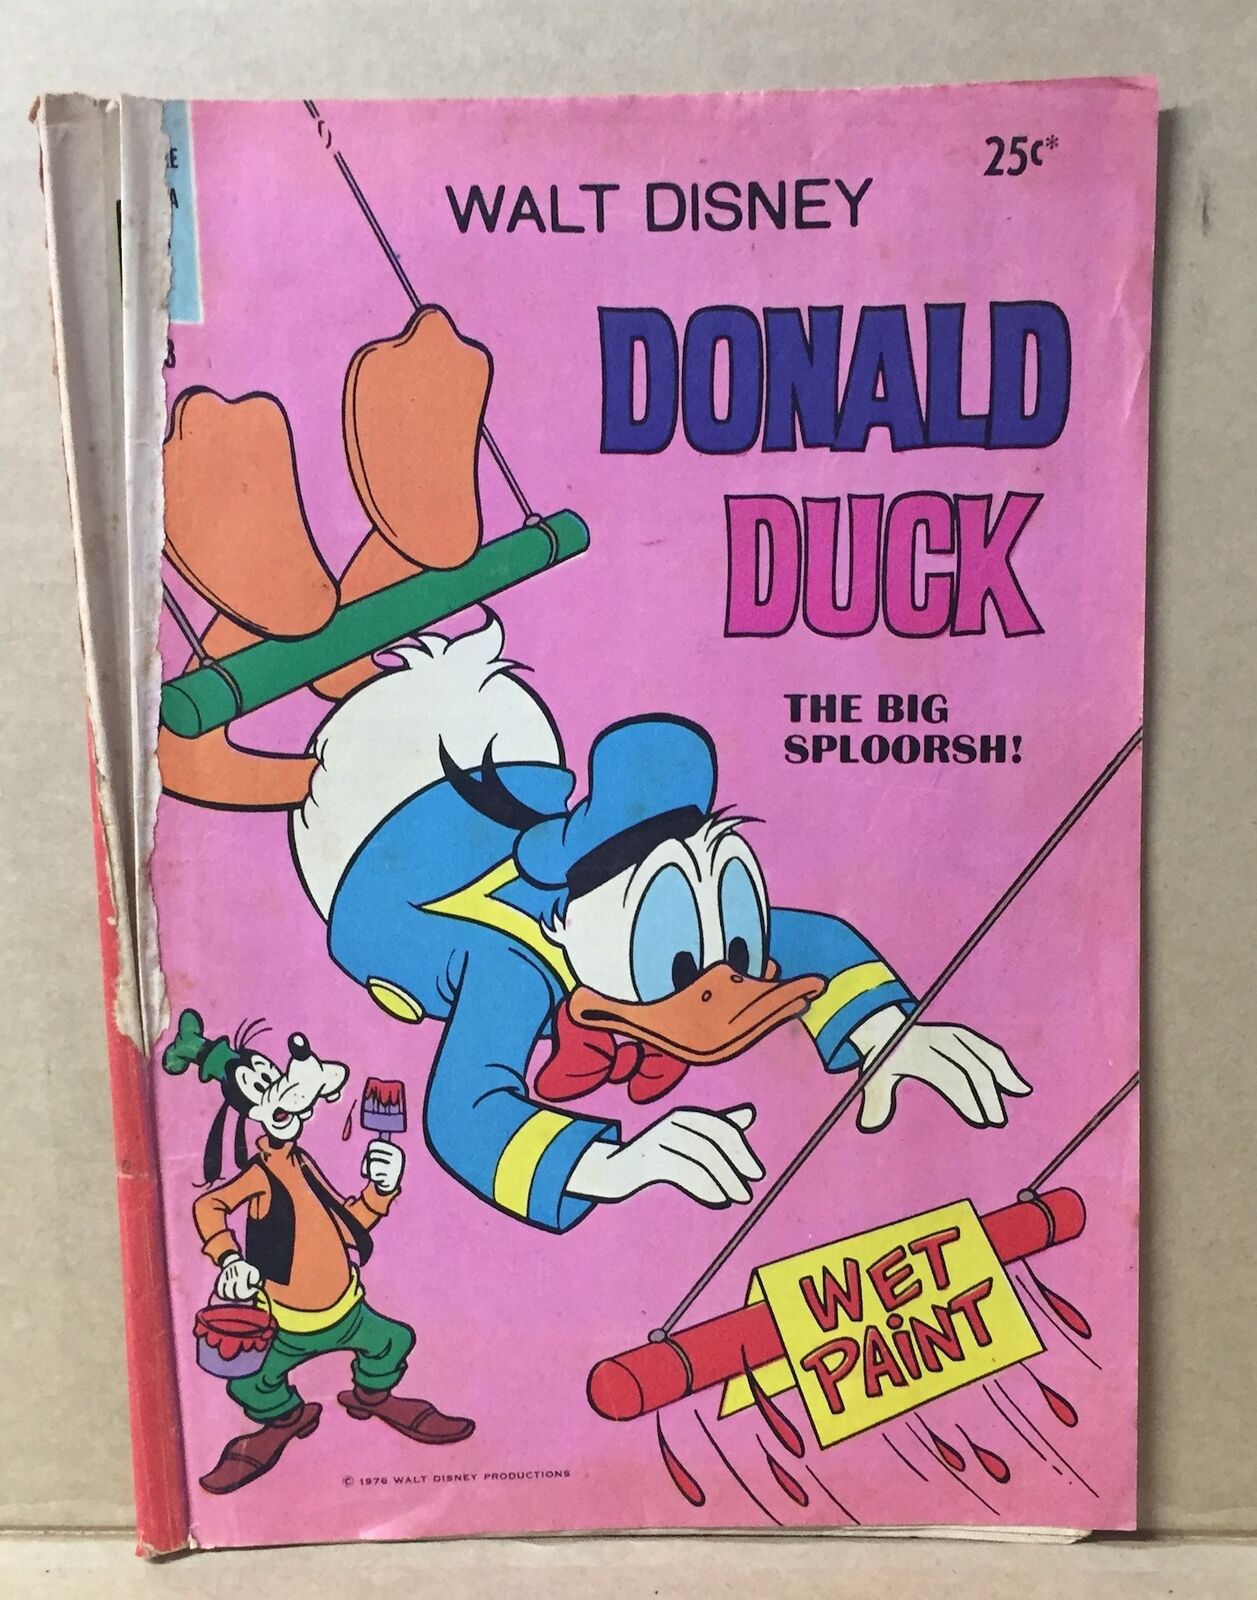 COMIC BOOK - WALT DISNEY DONALD DUCK D233